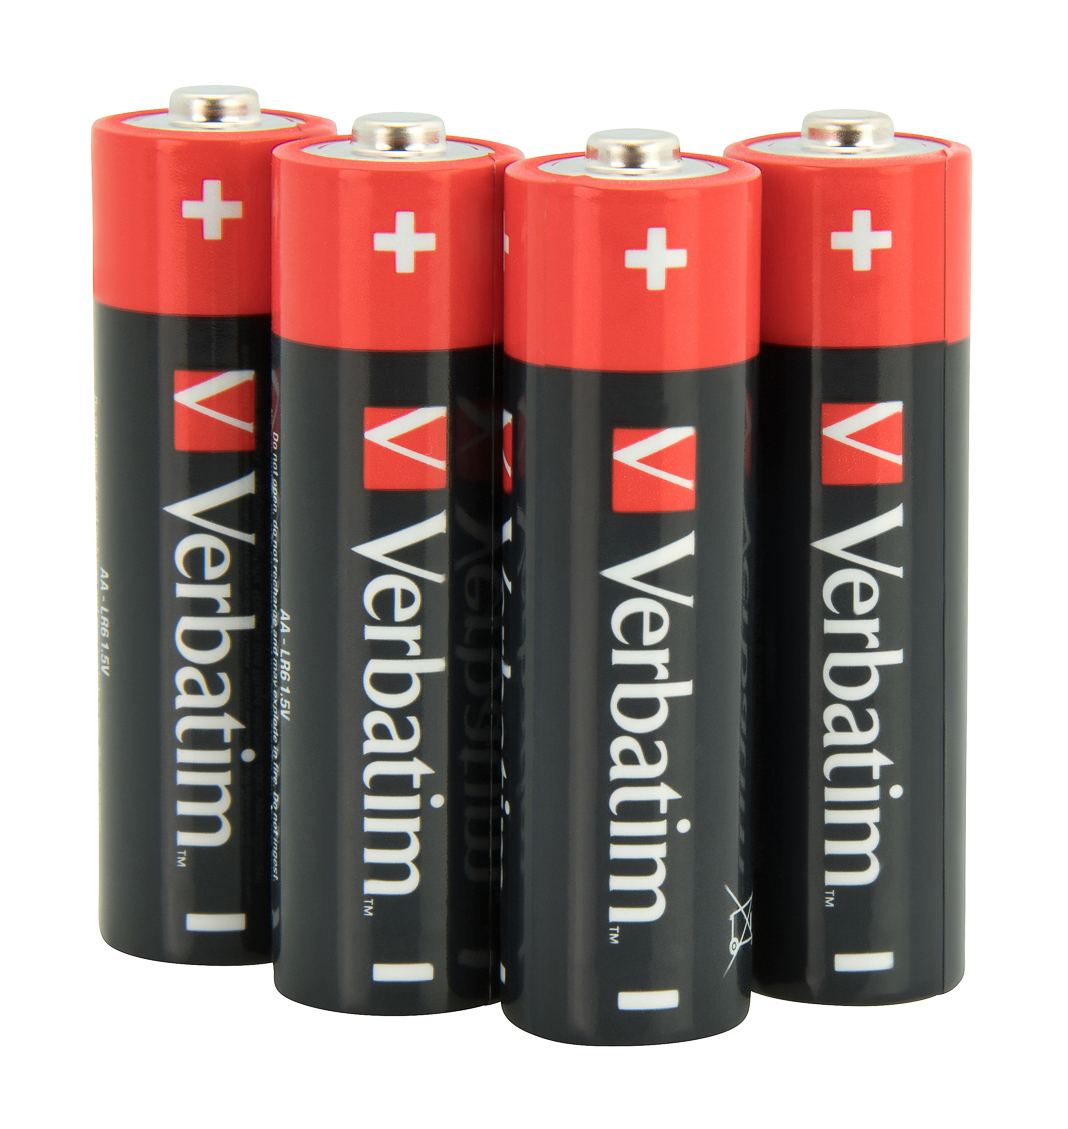 Verbatim Batterie 4 x AA-Typ - Alkalisch